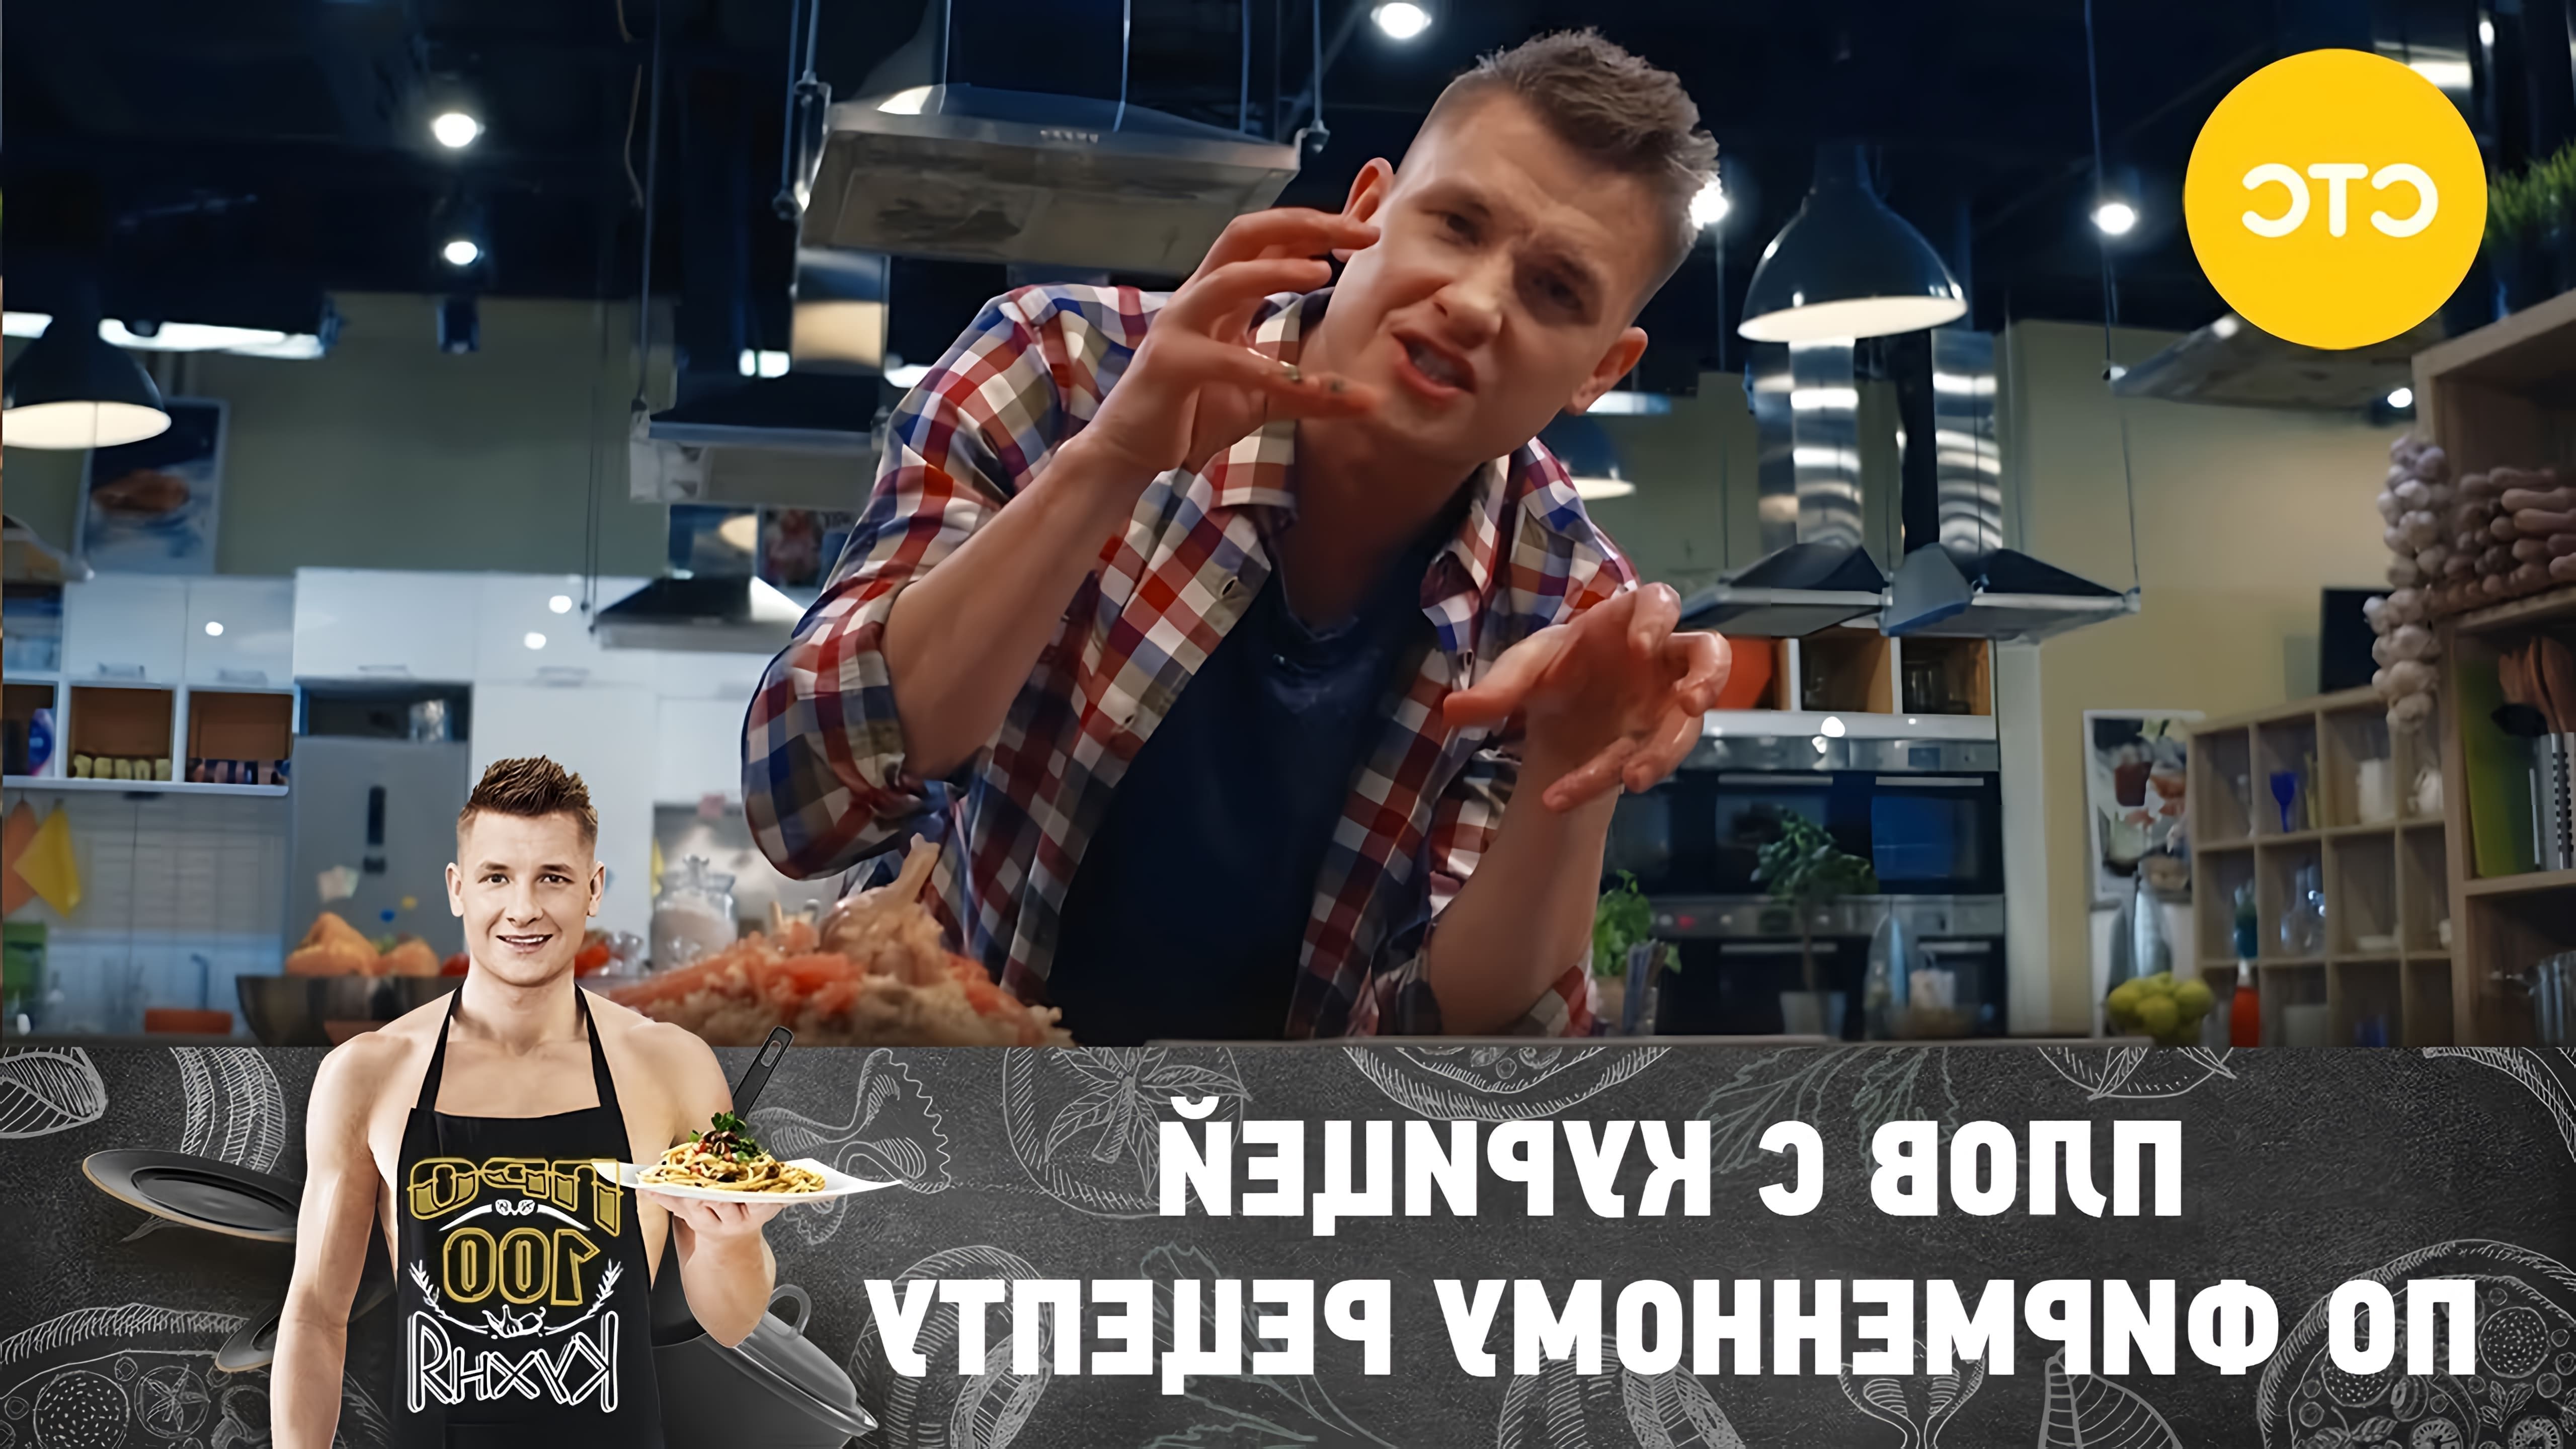 В этом видео повар показывает, как приготовить плов с курицей по его фирменному рецепту